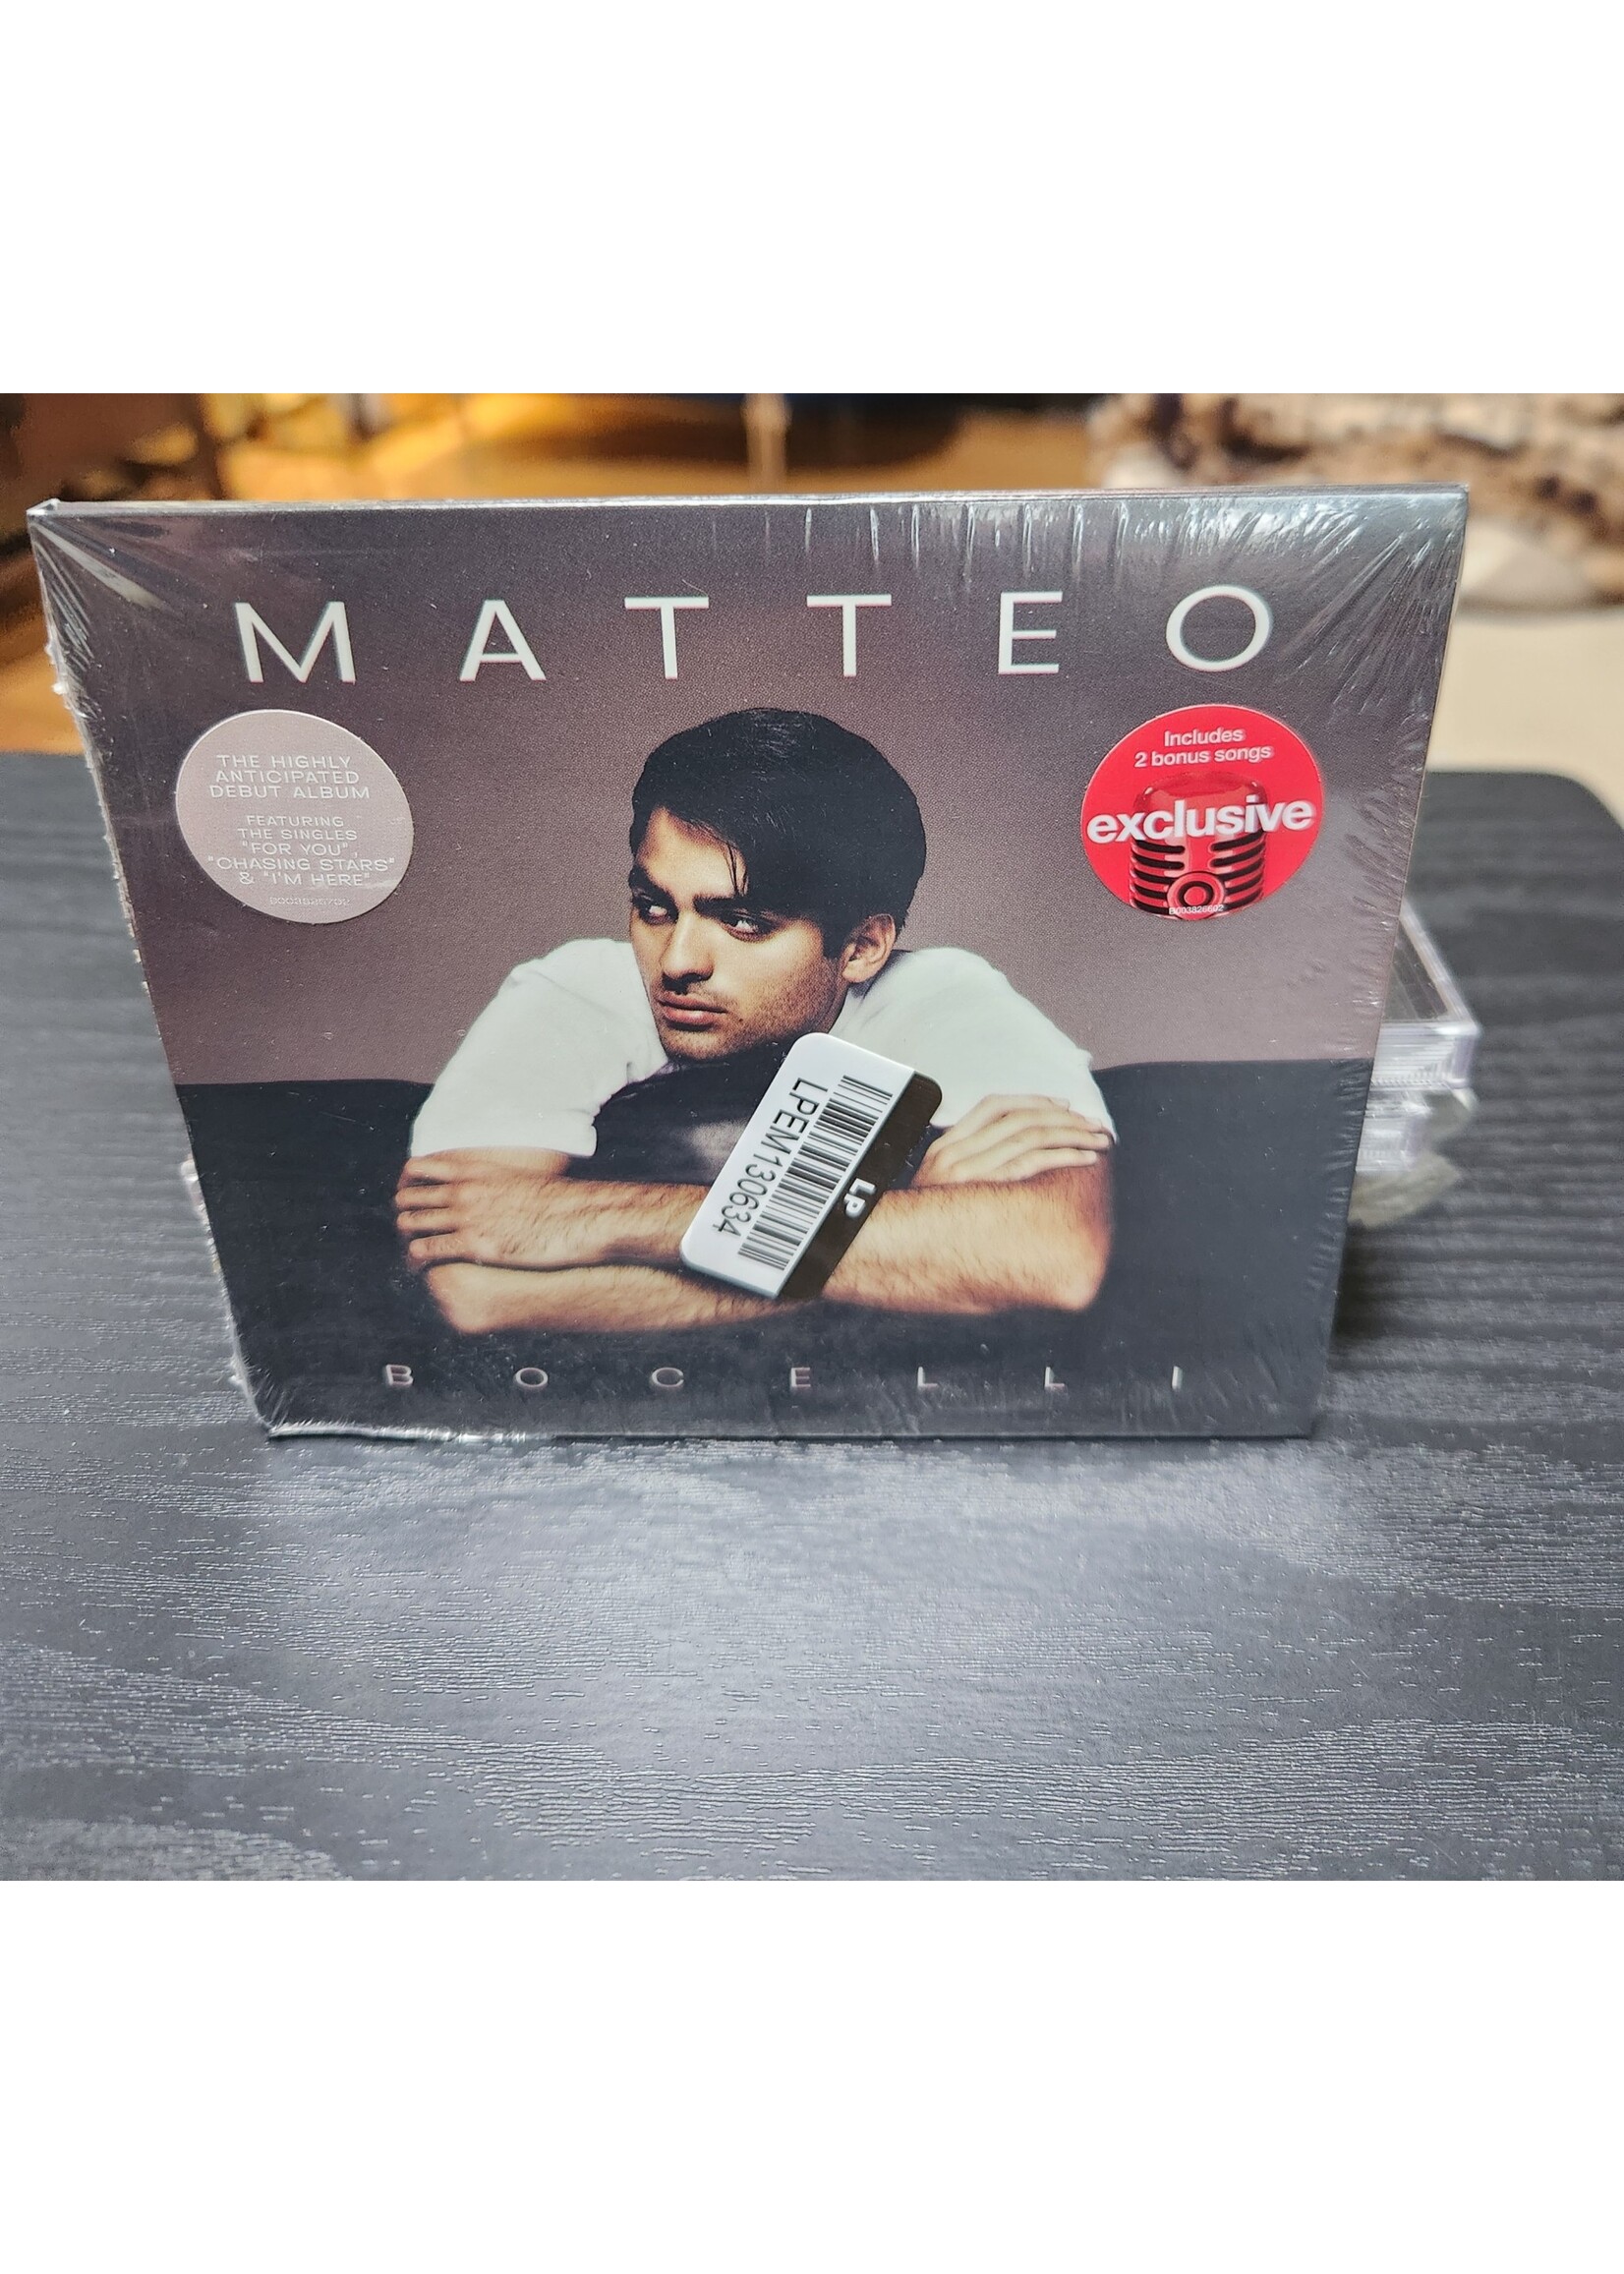 Matteo Bocelli - Matteo CD (Target Exclusive)